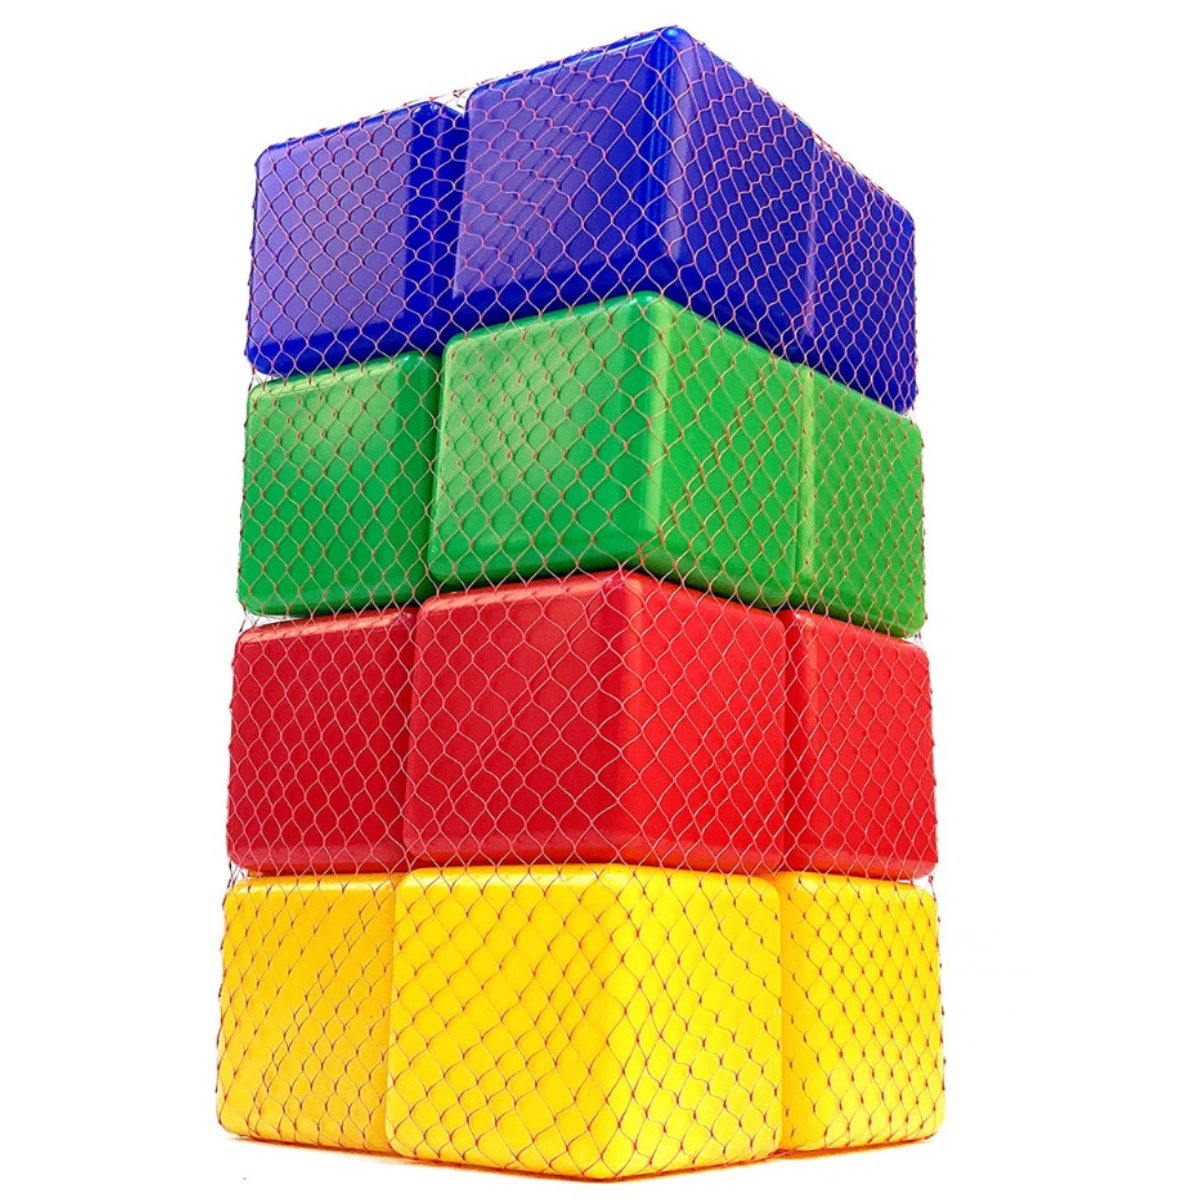 Игровой набор для детей Новокузнецкий Завод Пластмасс Кубики цветные развивающие 16 шт - фото 4